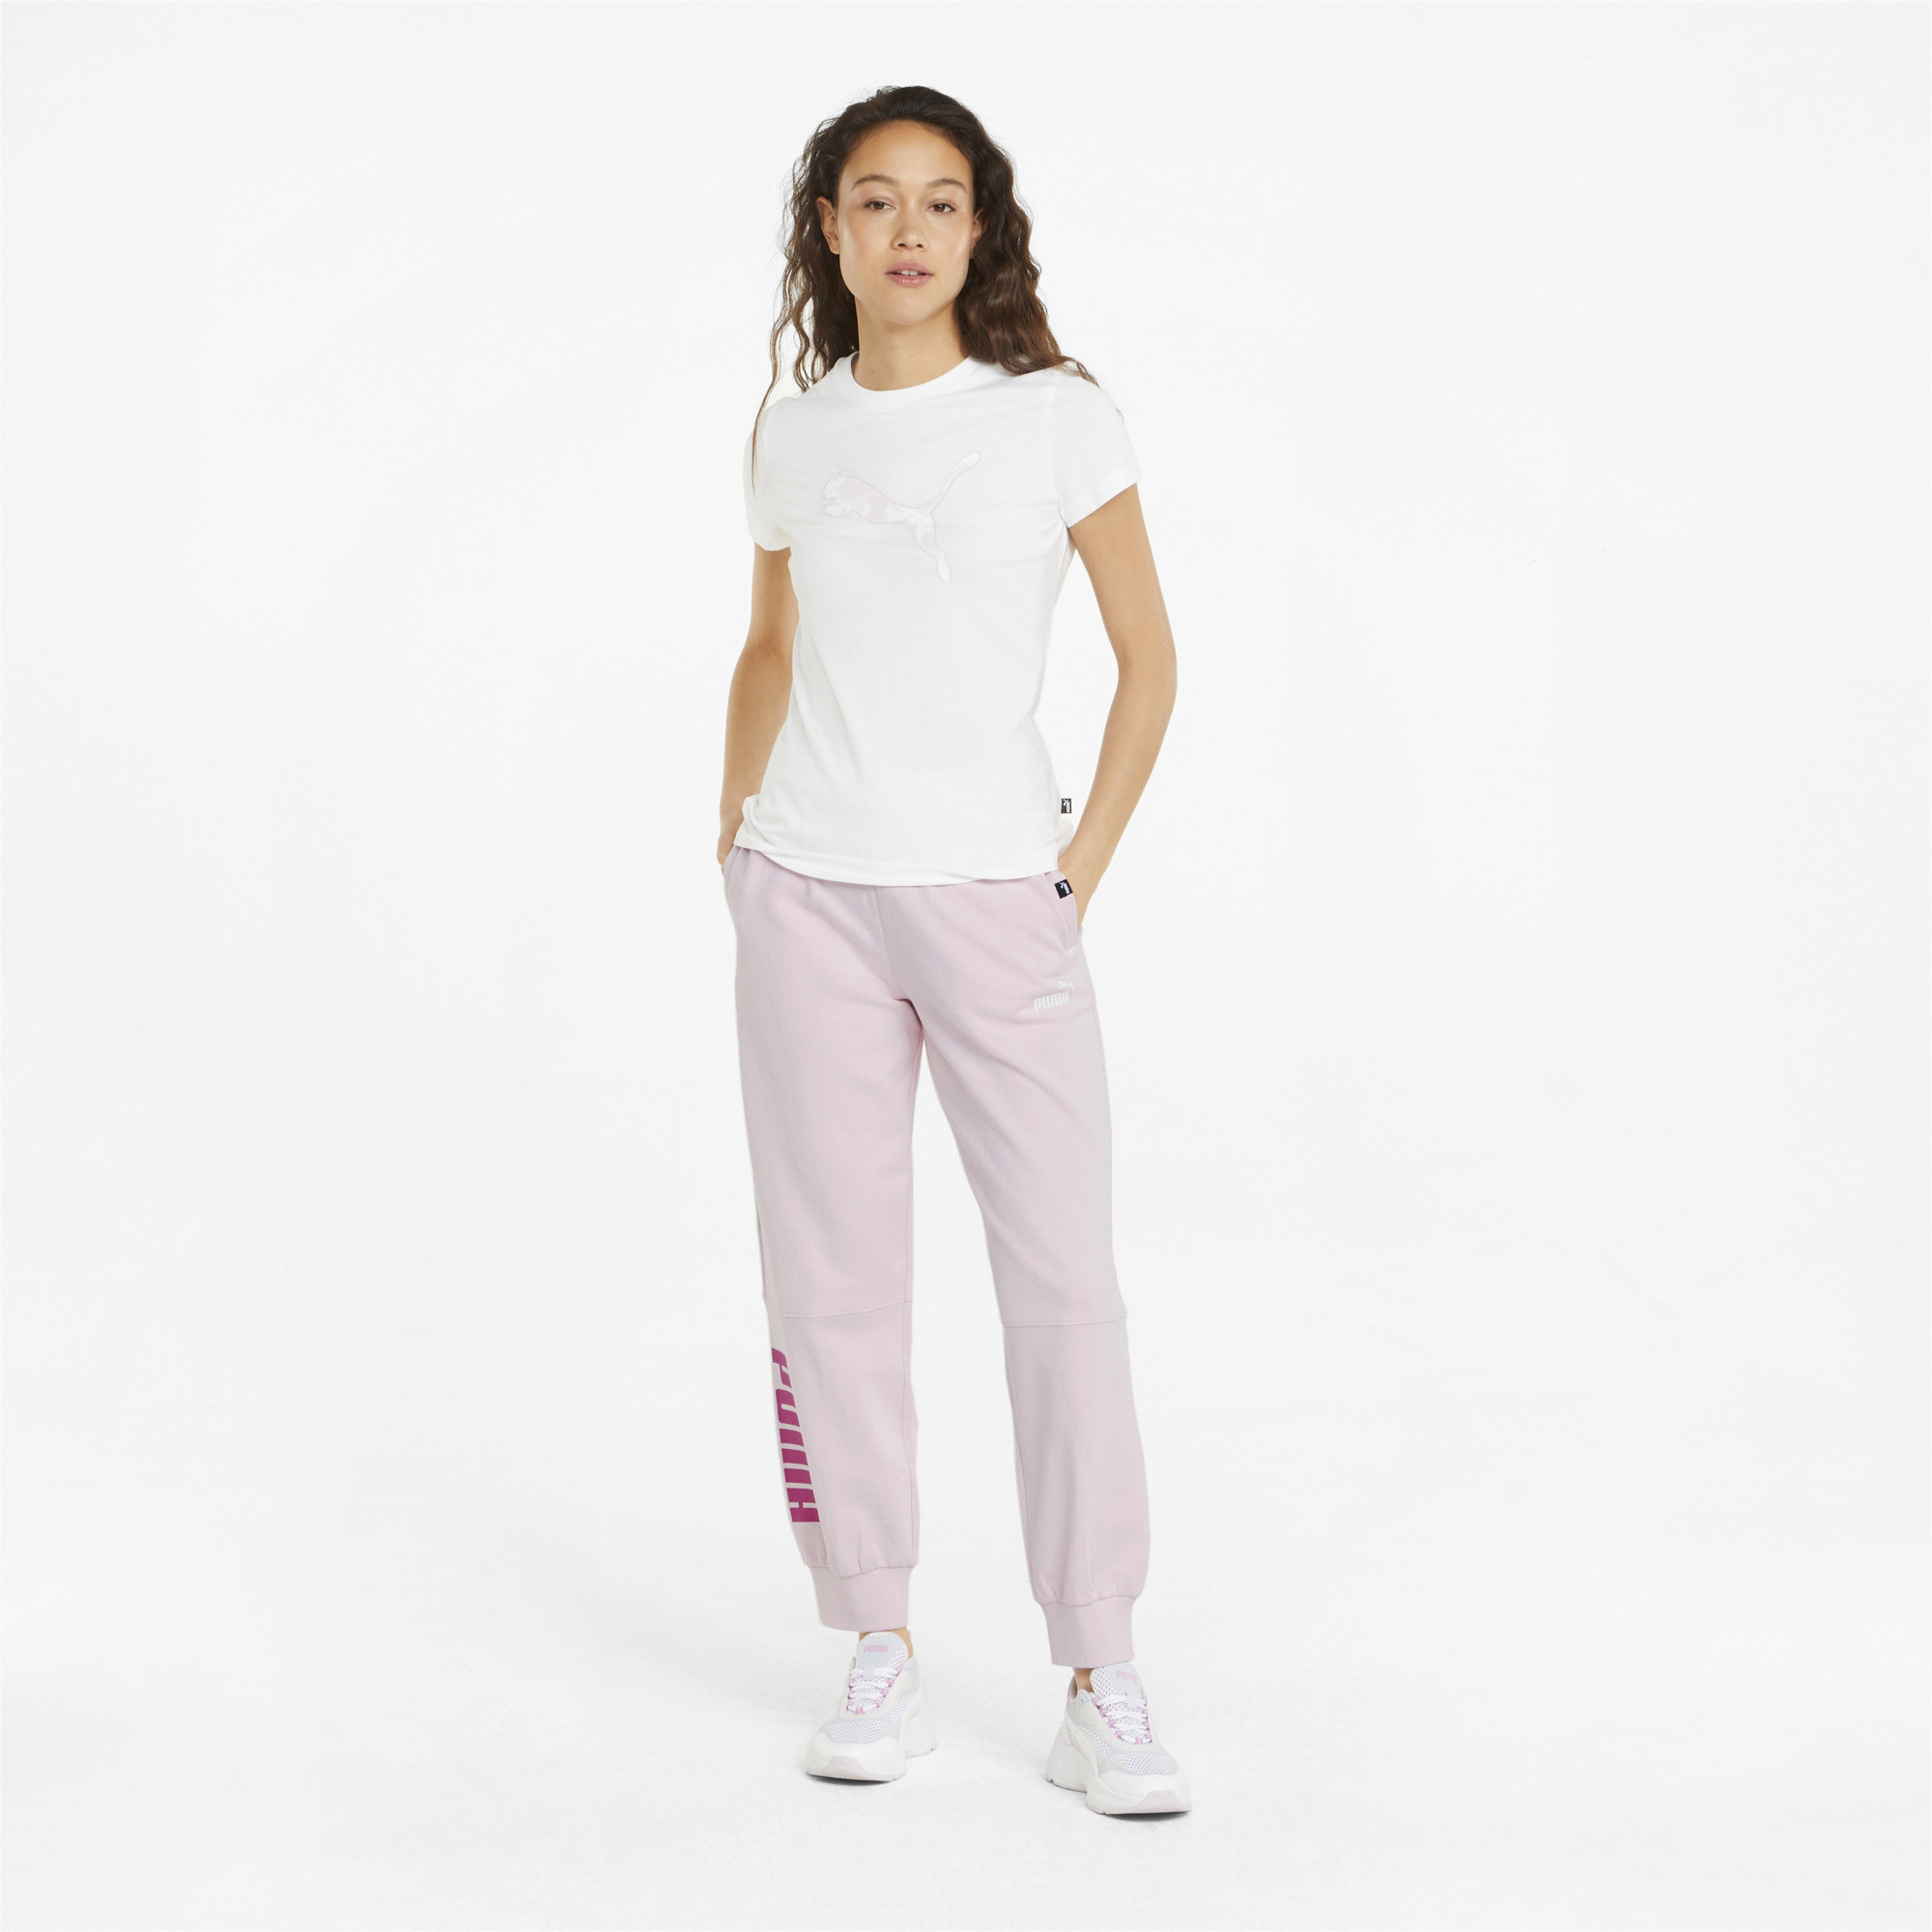 Спортивные брюки женские PUMA 84712716 розовые M